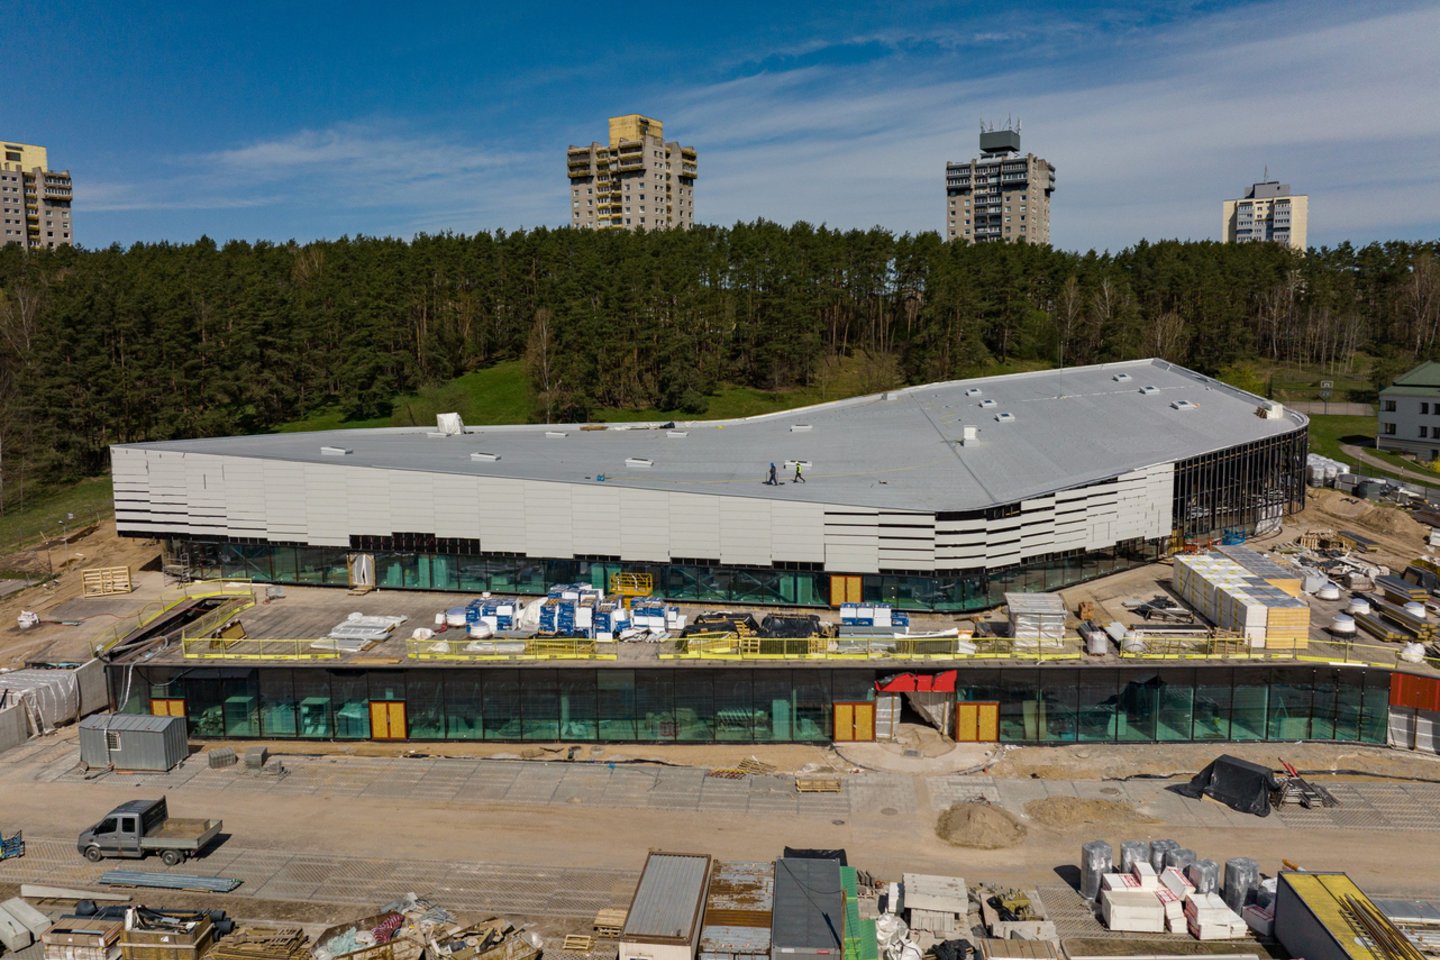 Sostinės Lazdynų baseine šiuo metu baigiamas olimpinio baseino įrengimas.<br>S.Žiūros nuotr.